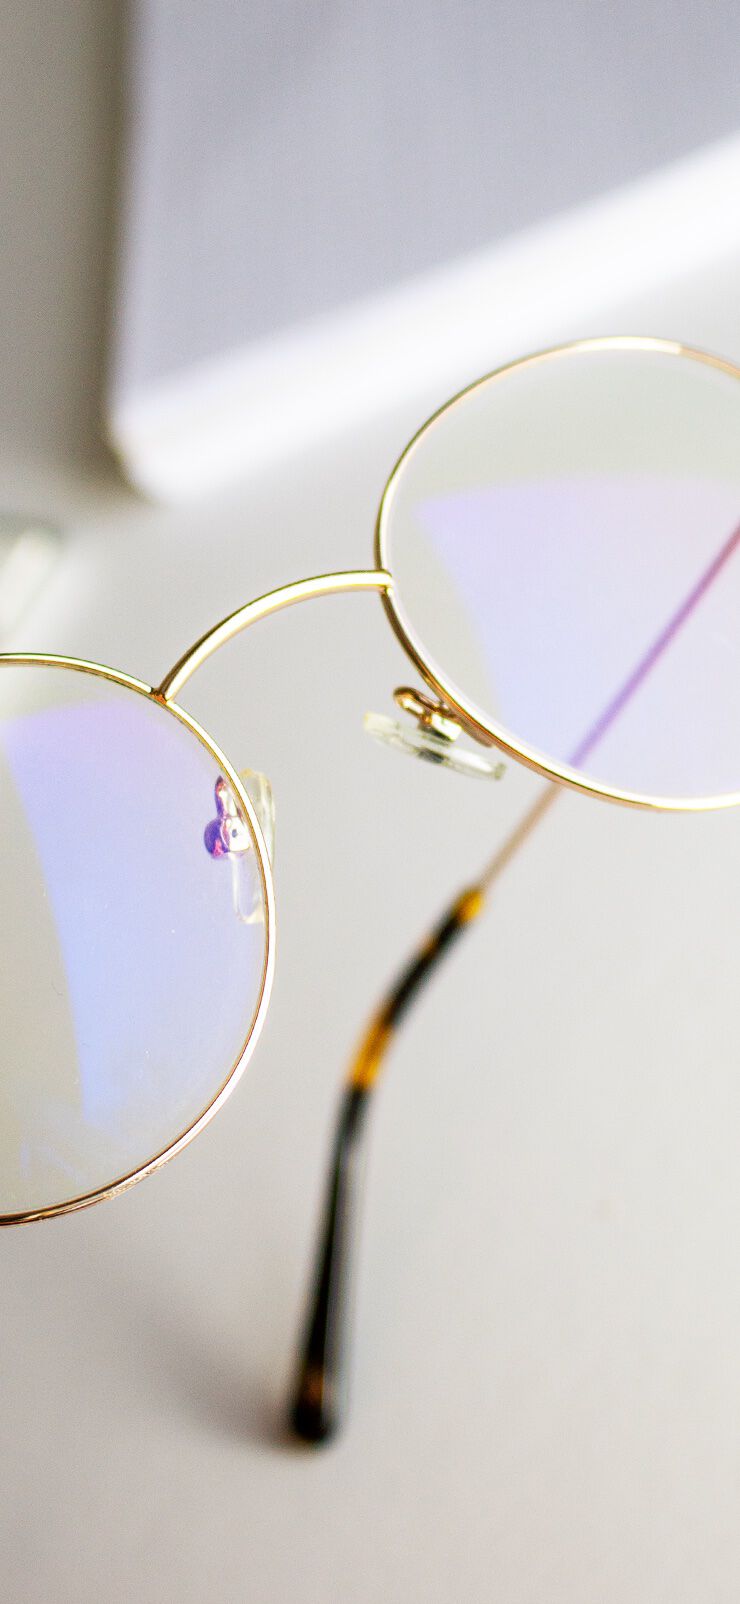 Blaufilterbrille: Das sind die besten Produkte, um deine Augen zu